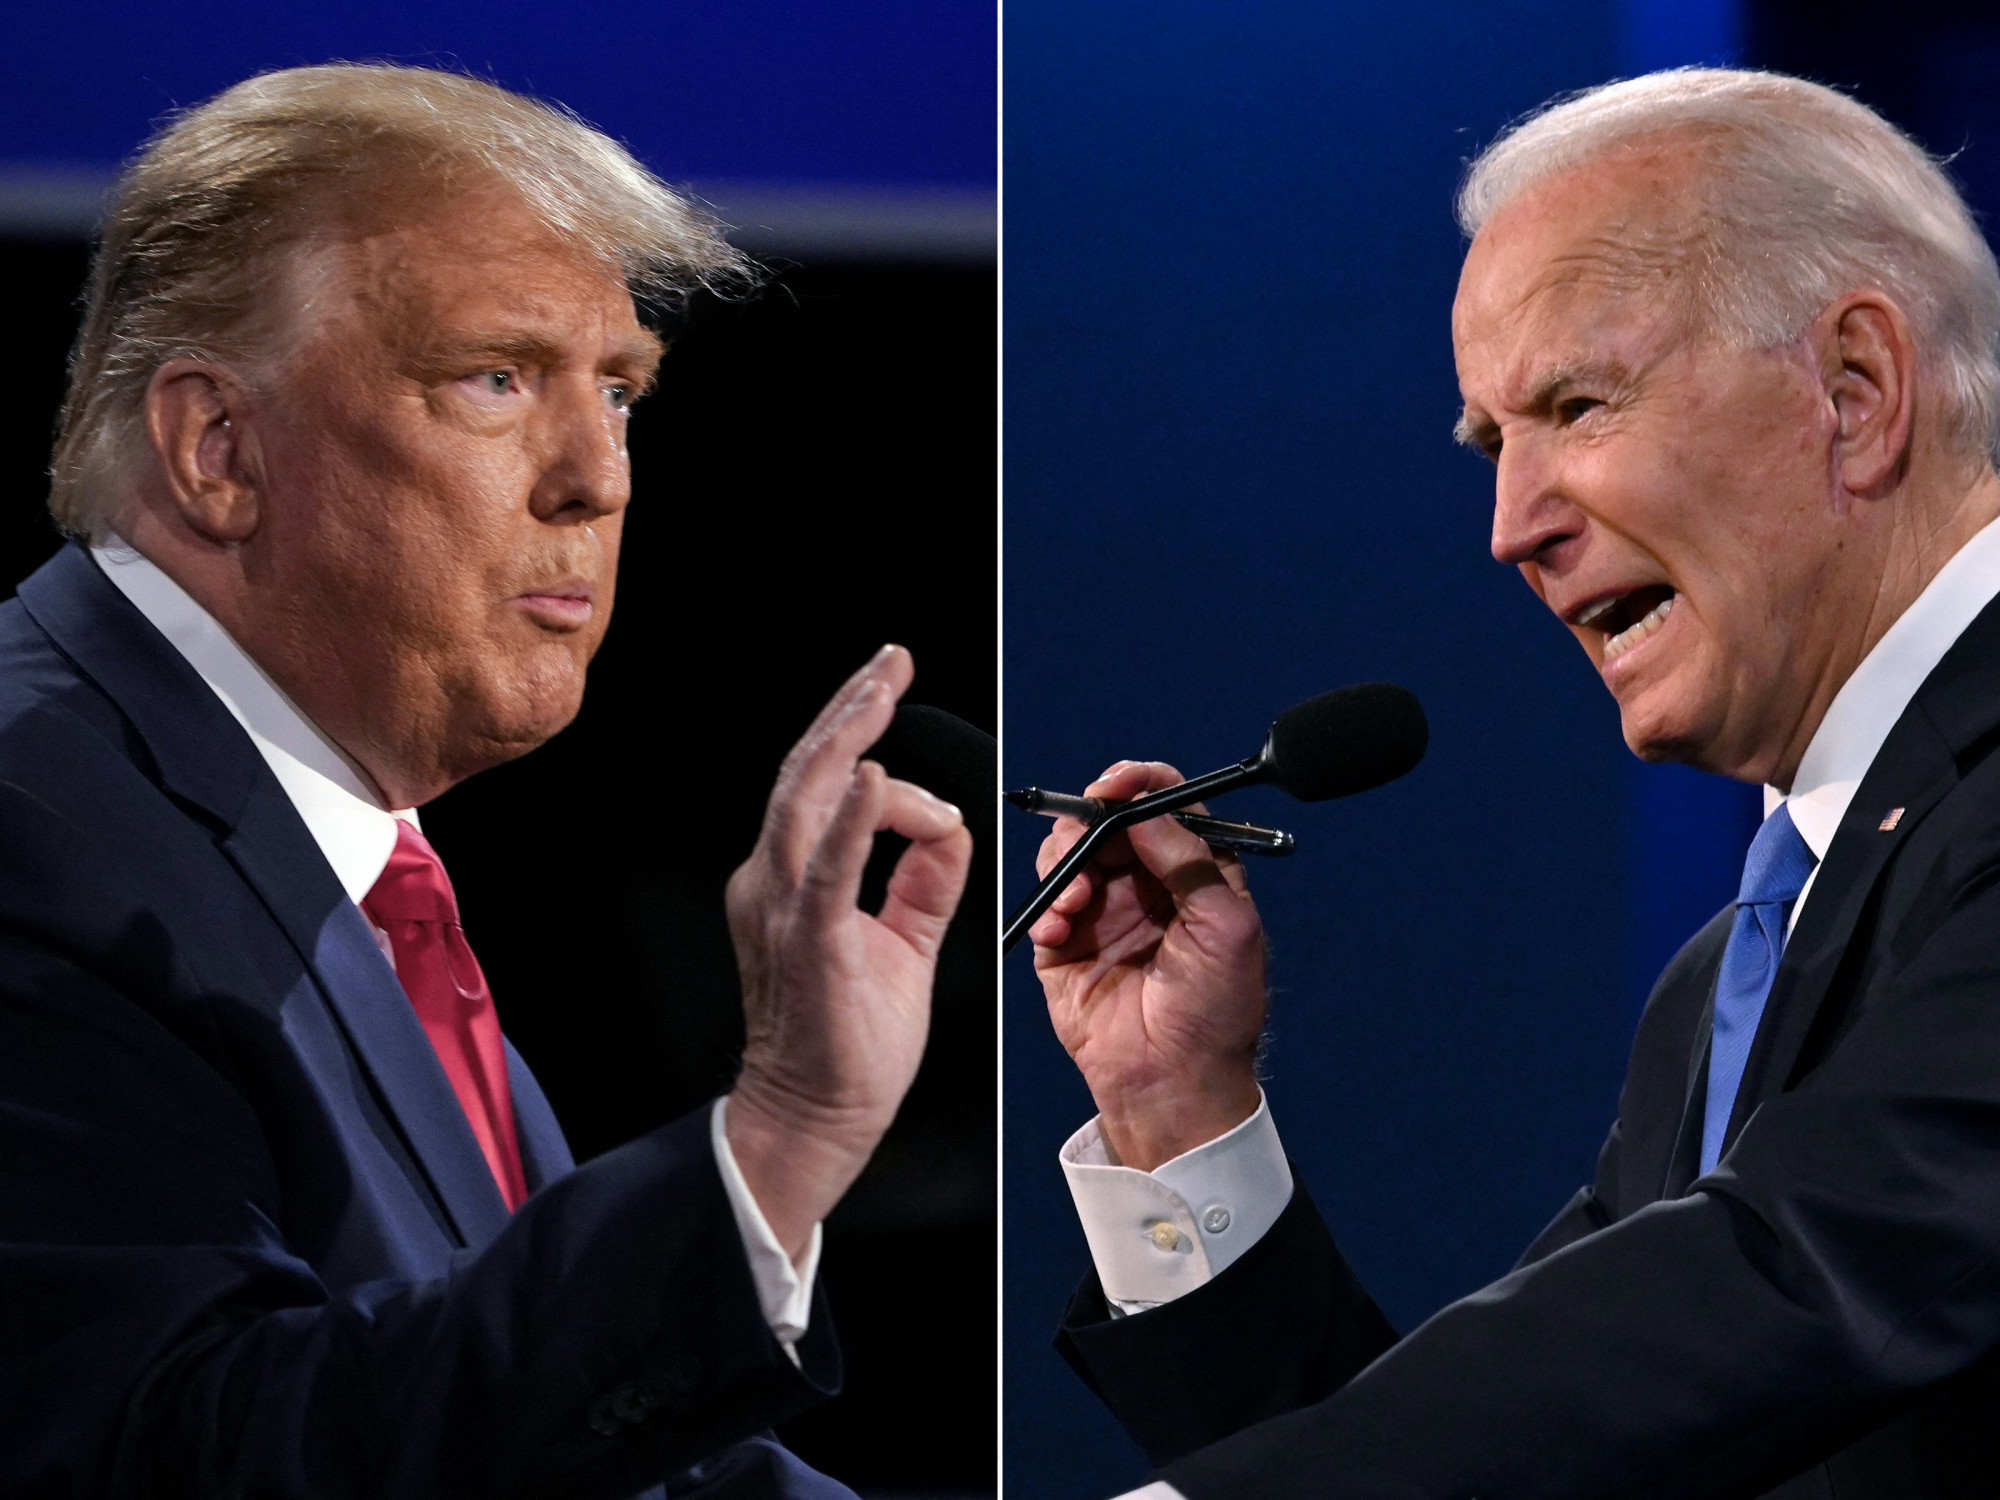 Lassan a kétkedők is kénytelenek elfogadni: ismét Biden és Trump csap össze az amerikai elnökválasztáson